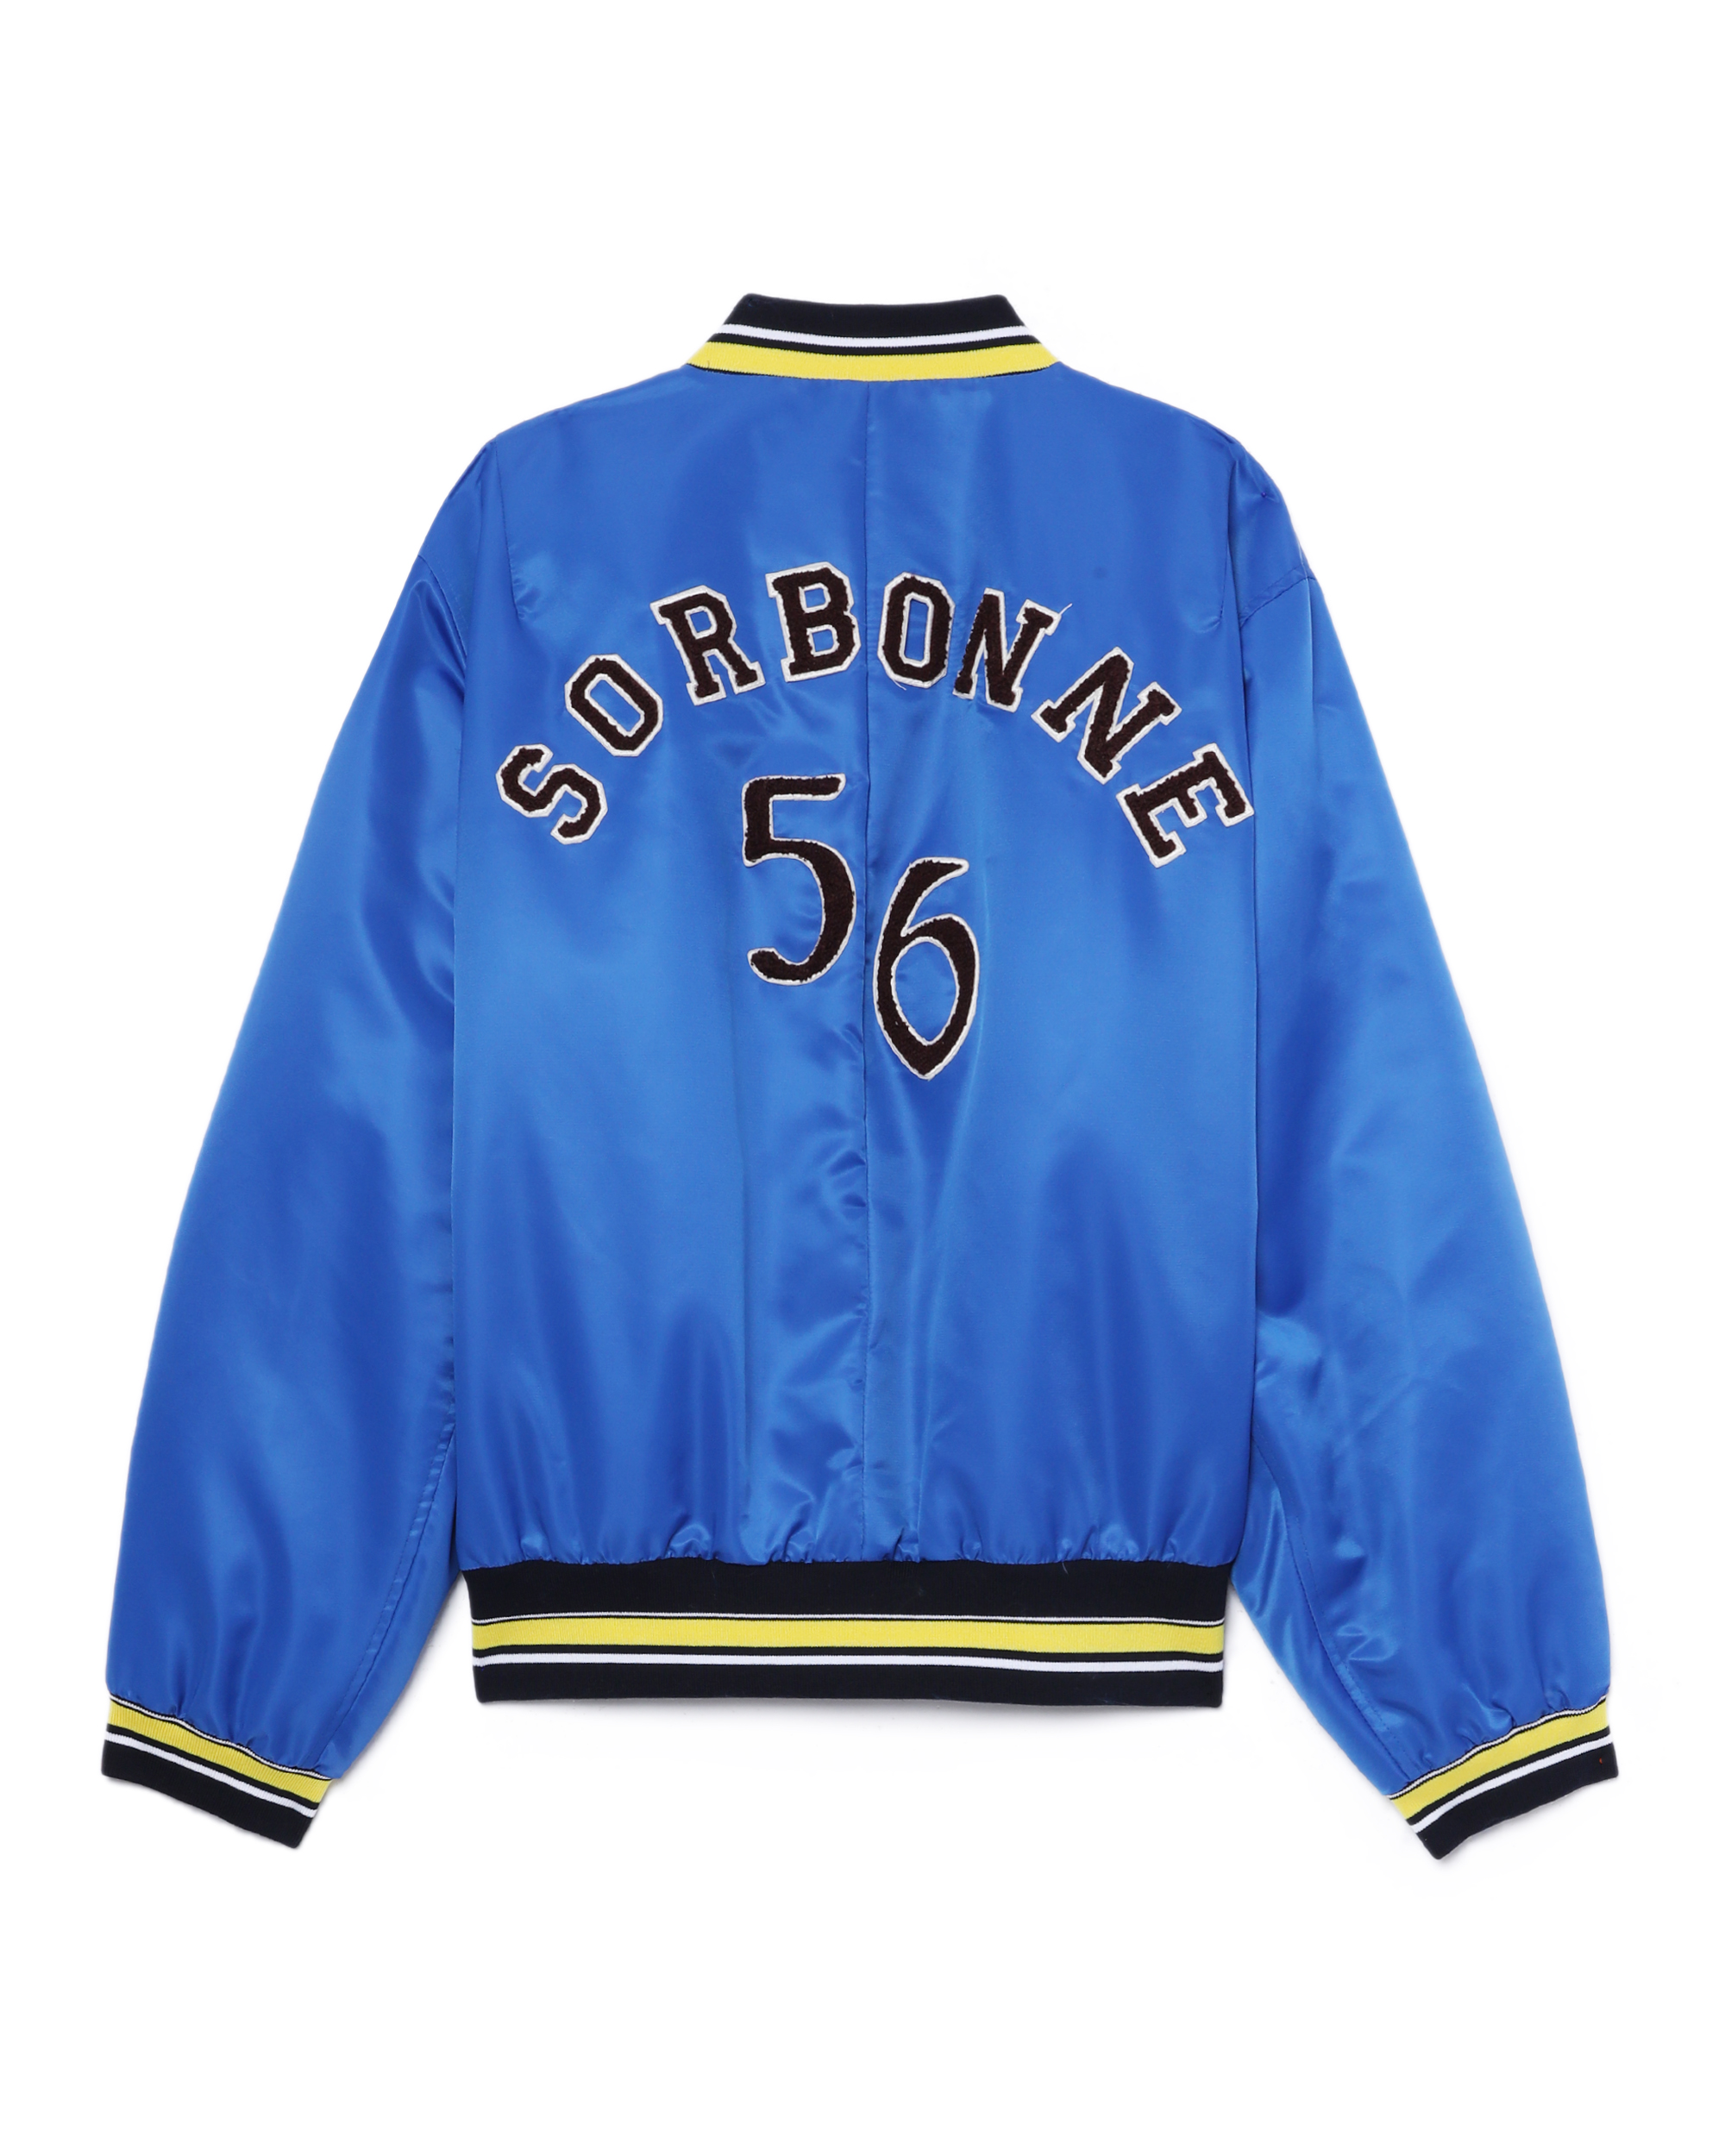 Sorbonne 56 varsity jacket